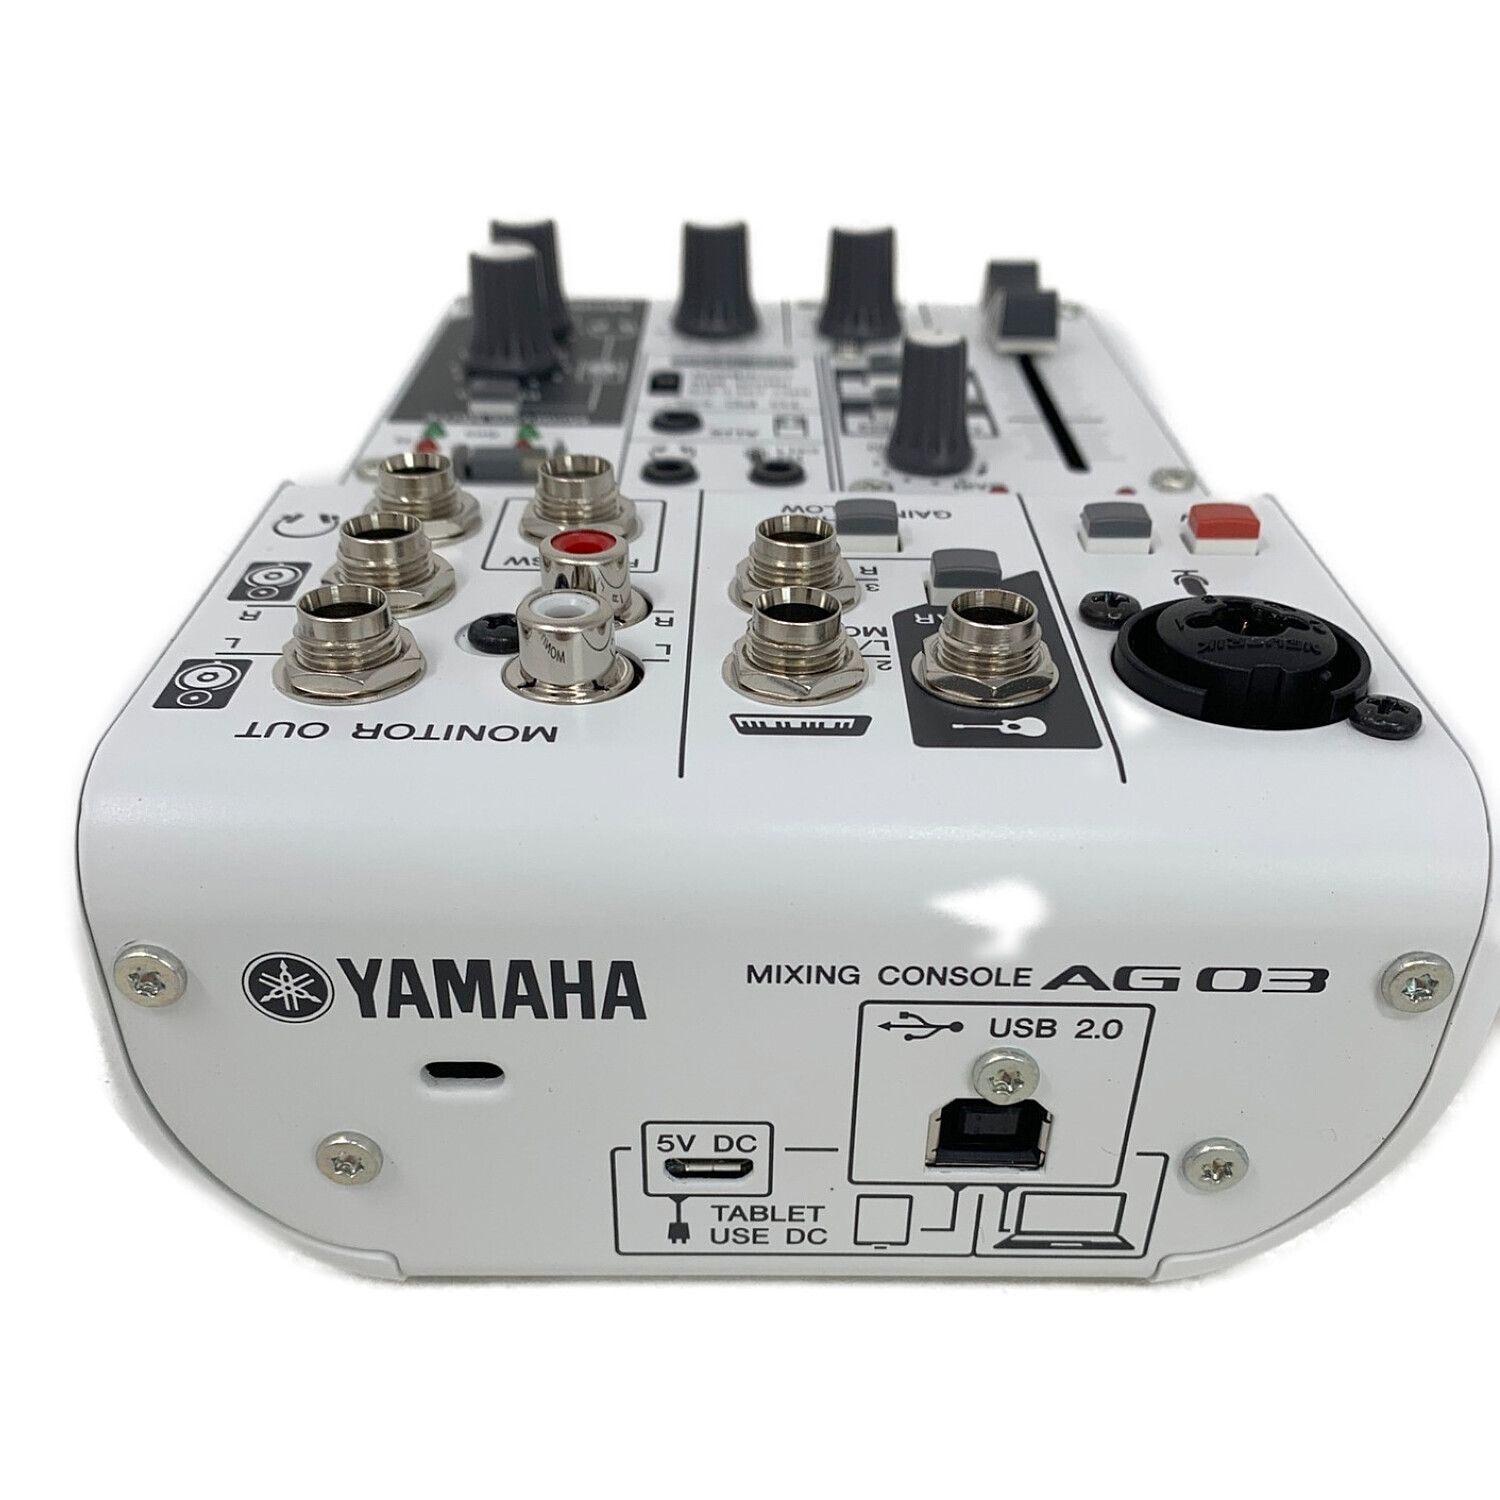 YAMAHA (ヤマハ) ウェブキャスティングミキサー AG03 通電確認のみ YCAN03753